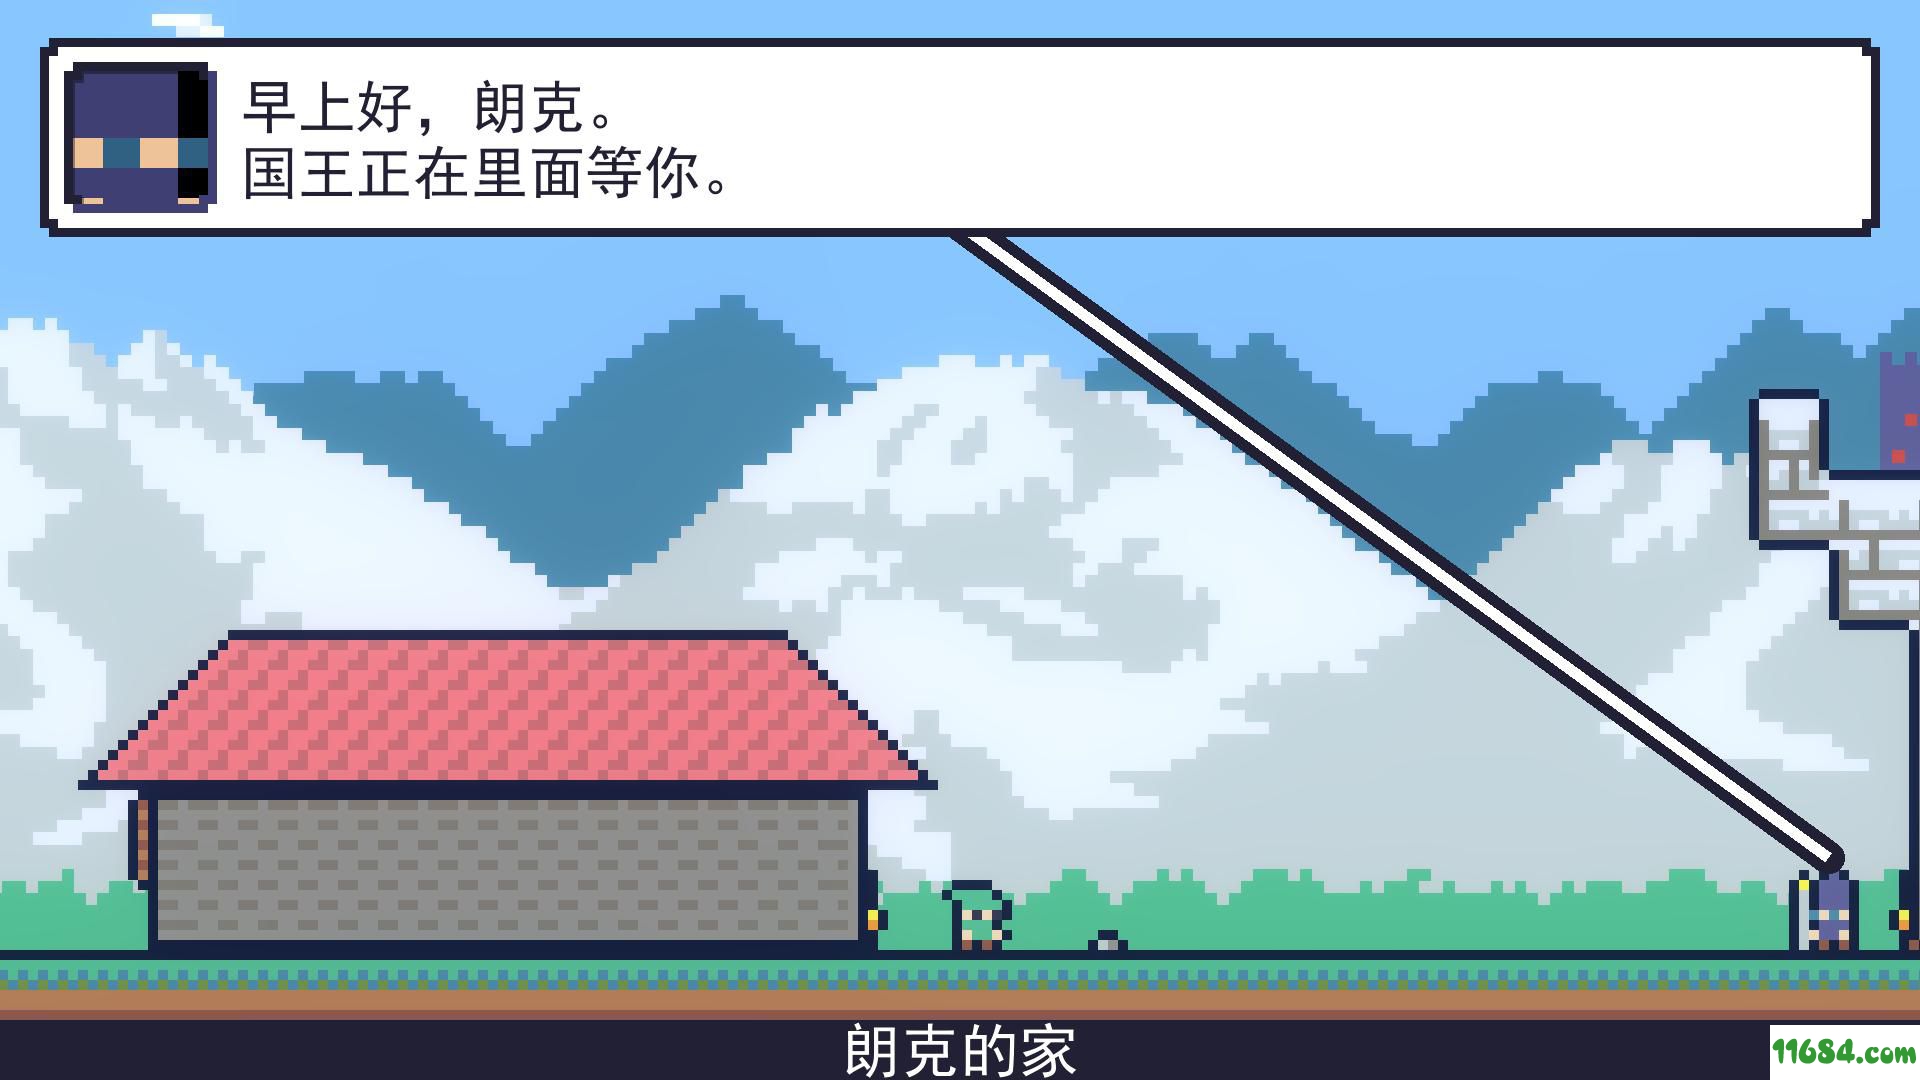 朗克历险记游戏下载-《朗克历险记Reventure》v1.1.0免安装简体中文版下载